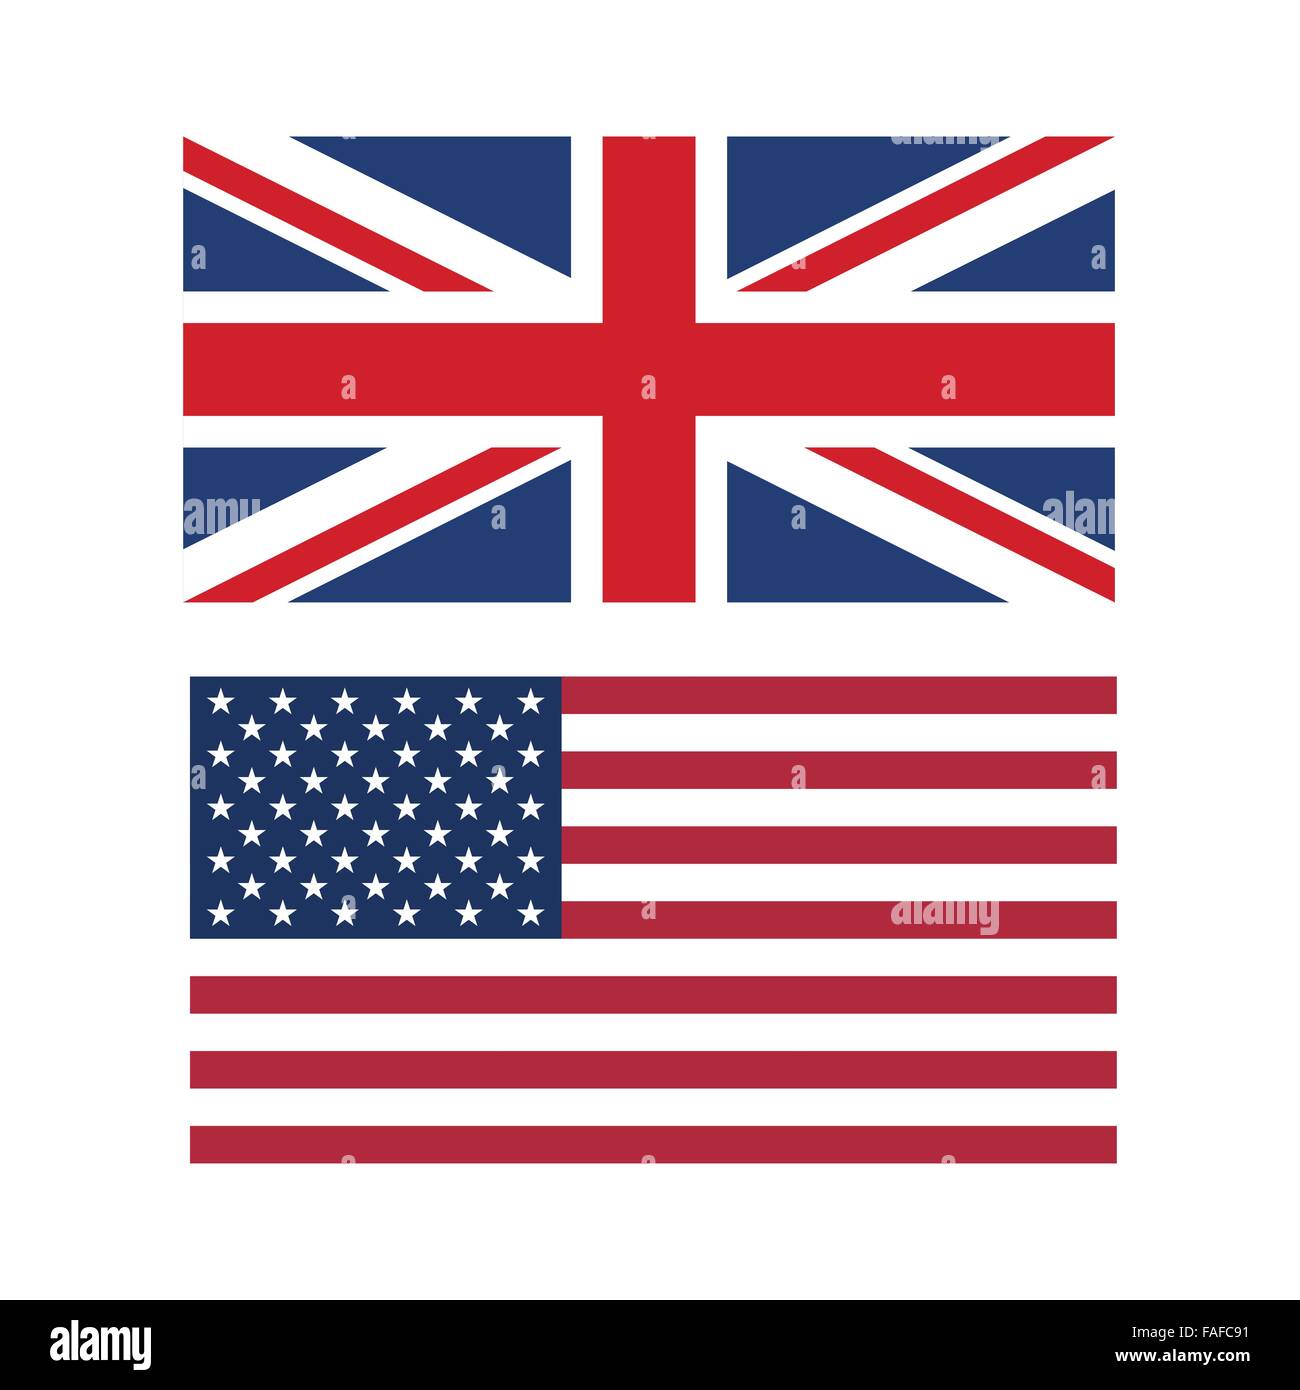 Vektor-Illustration der Flaggen der USA und Großbritannien Stock Vektor